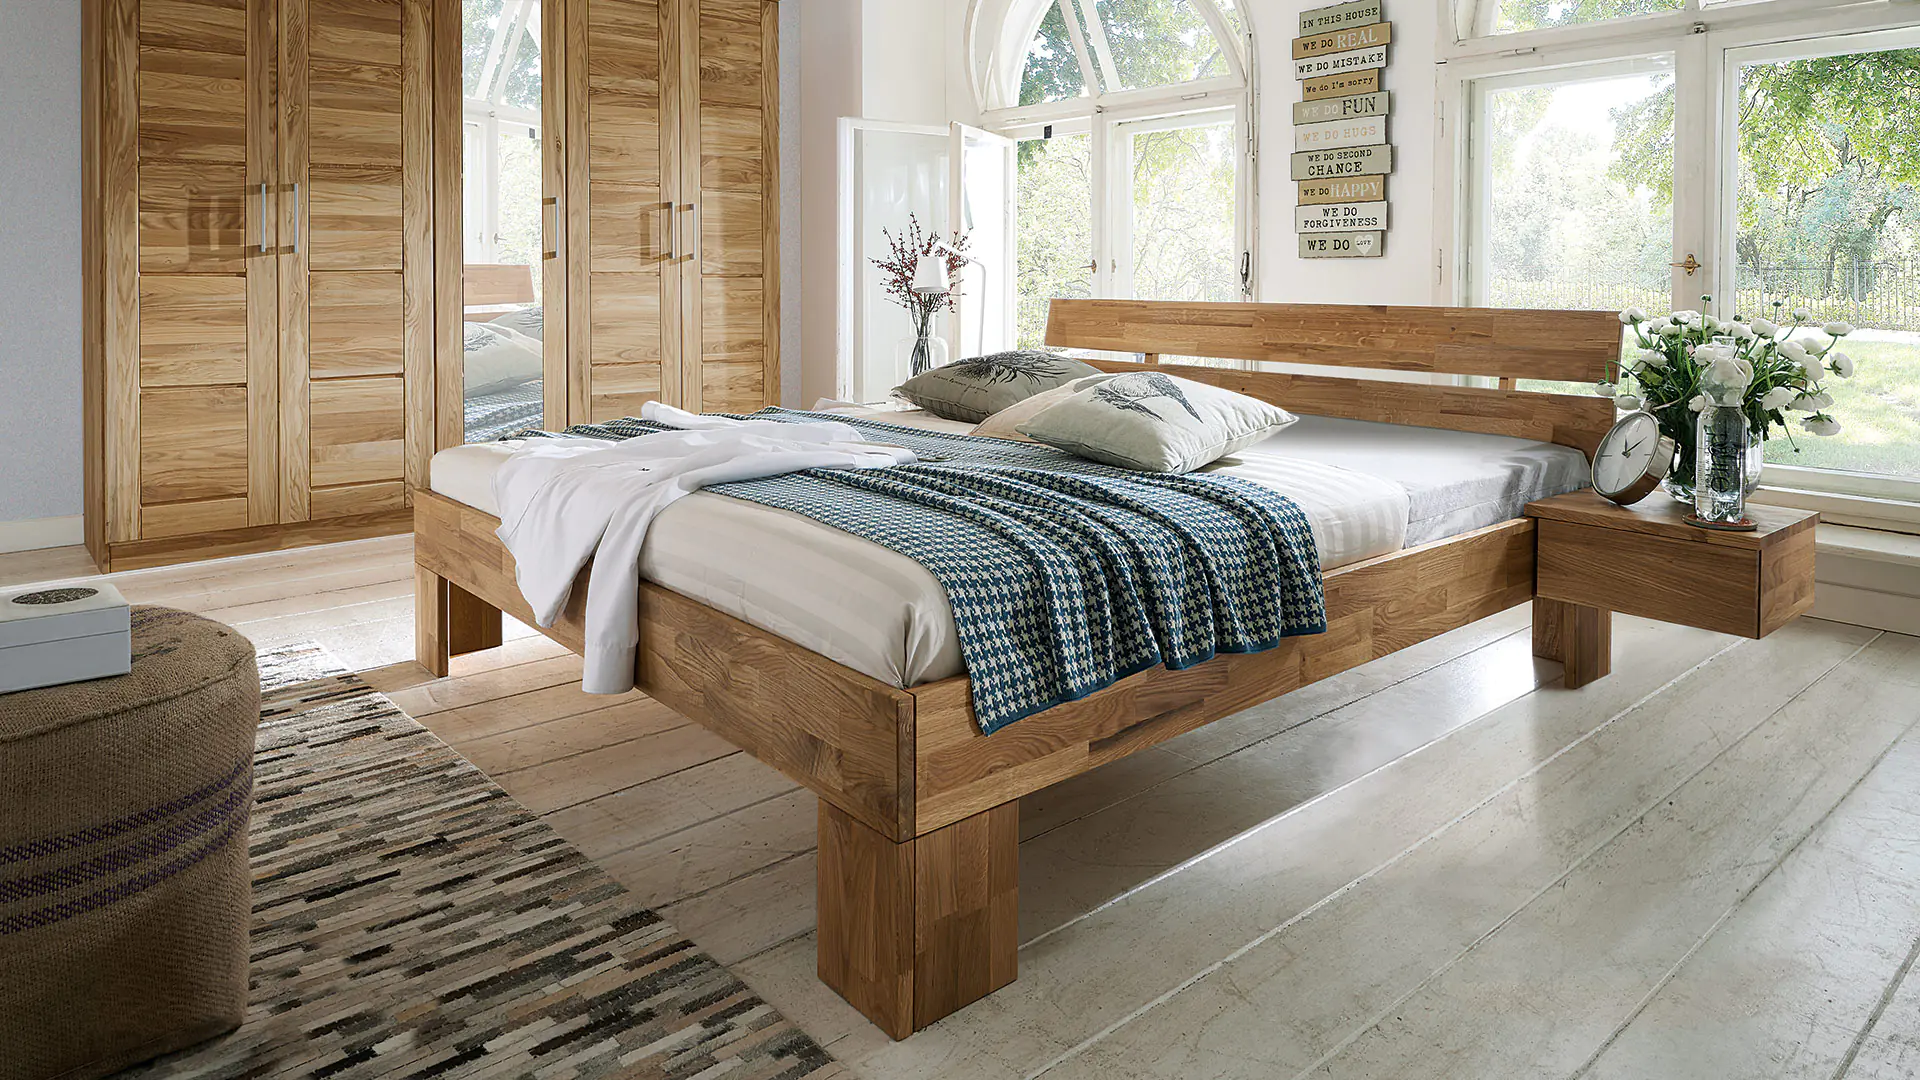 Massief houten bed in fijn wild eiken met bijpassende nachtconsole